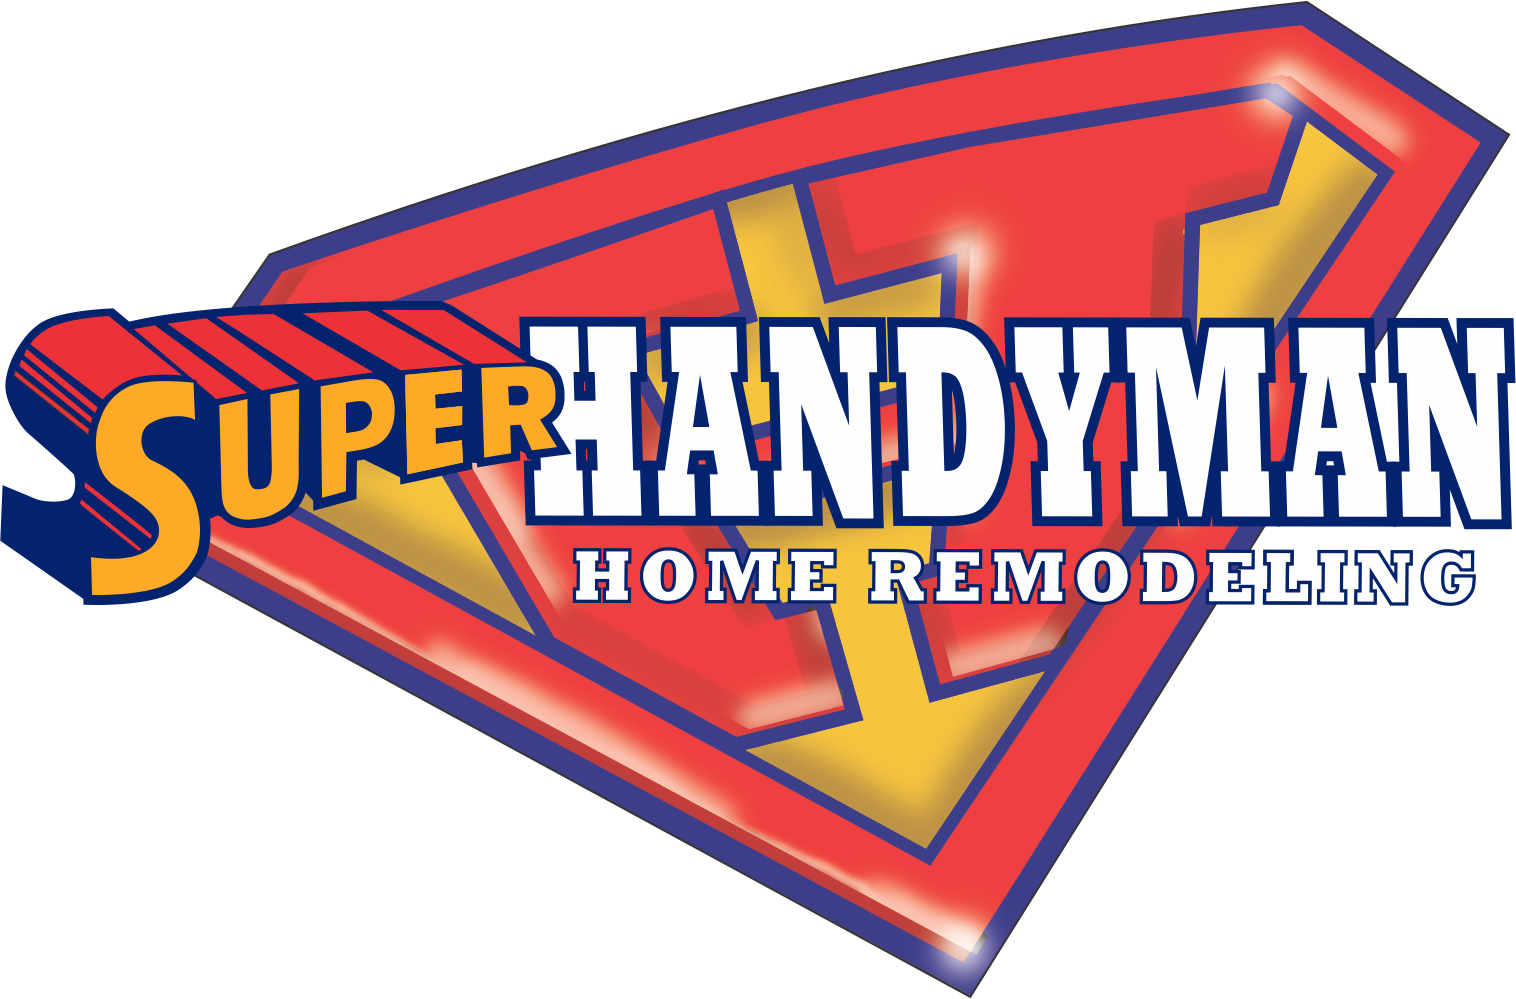 Super Handyman Home Remodeling Logo